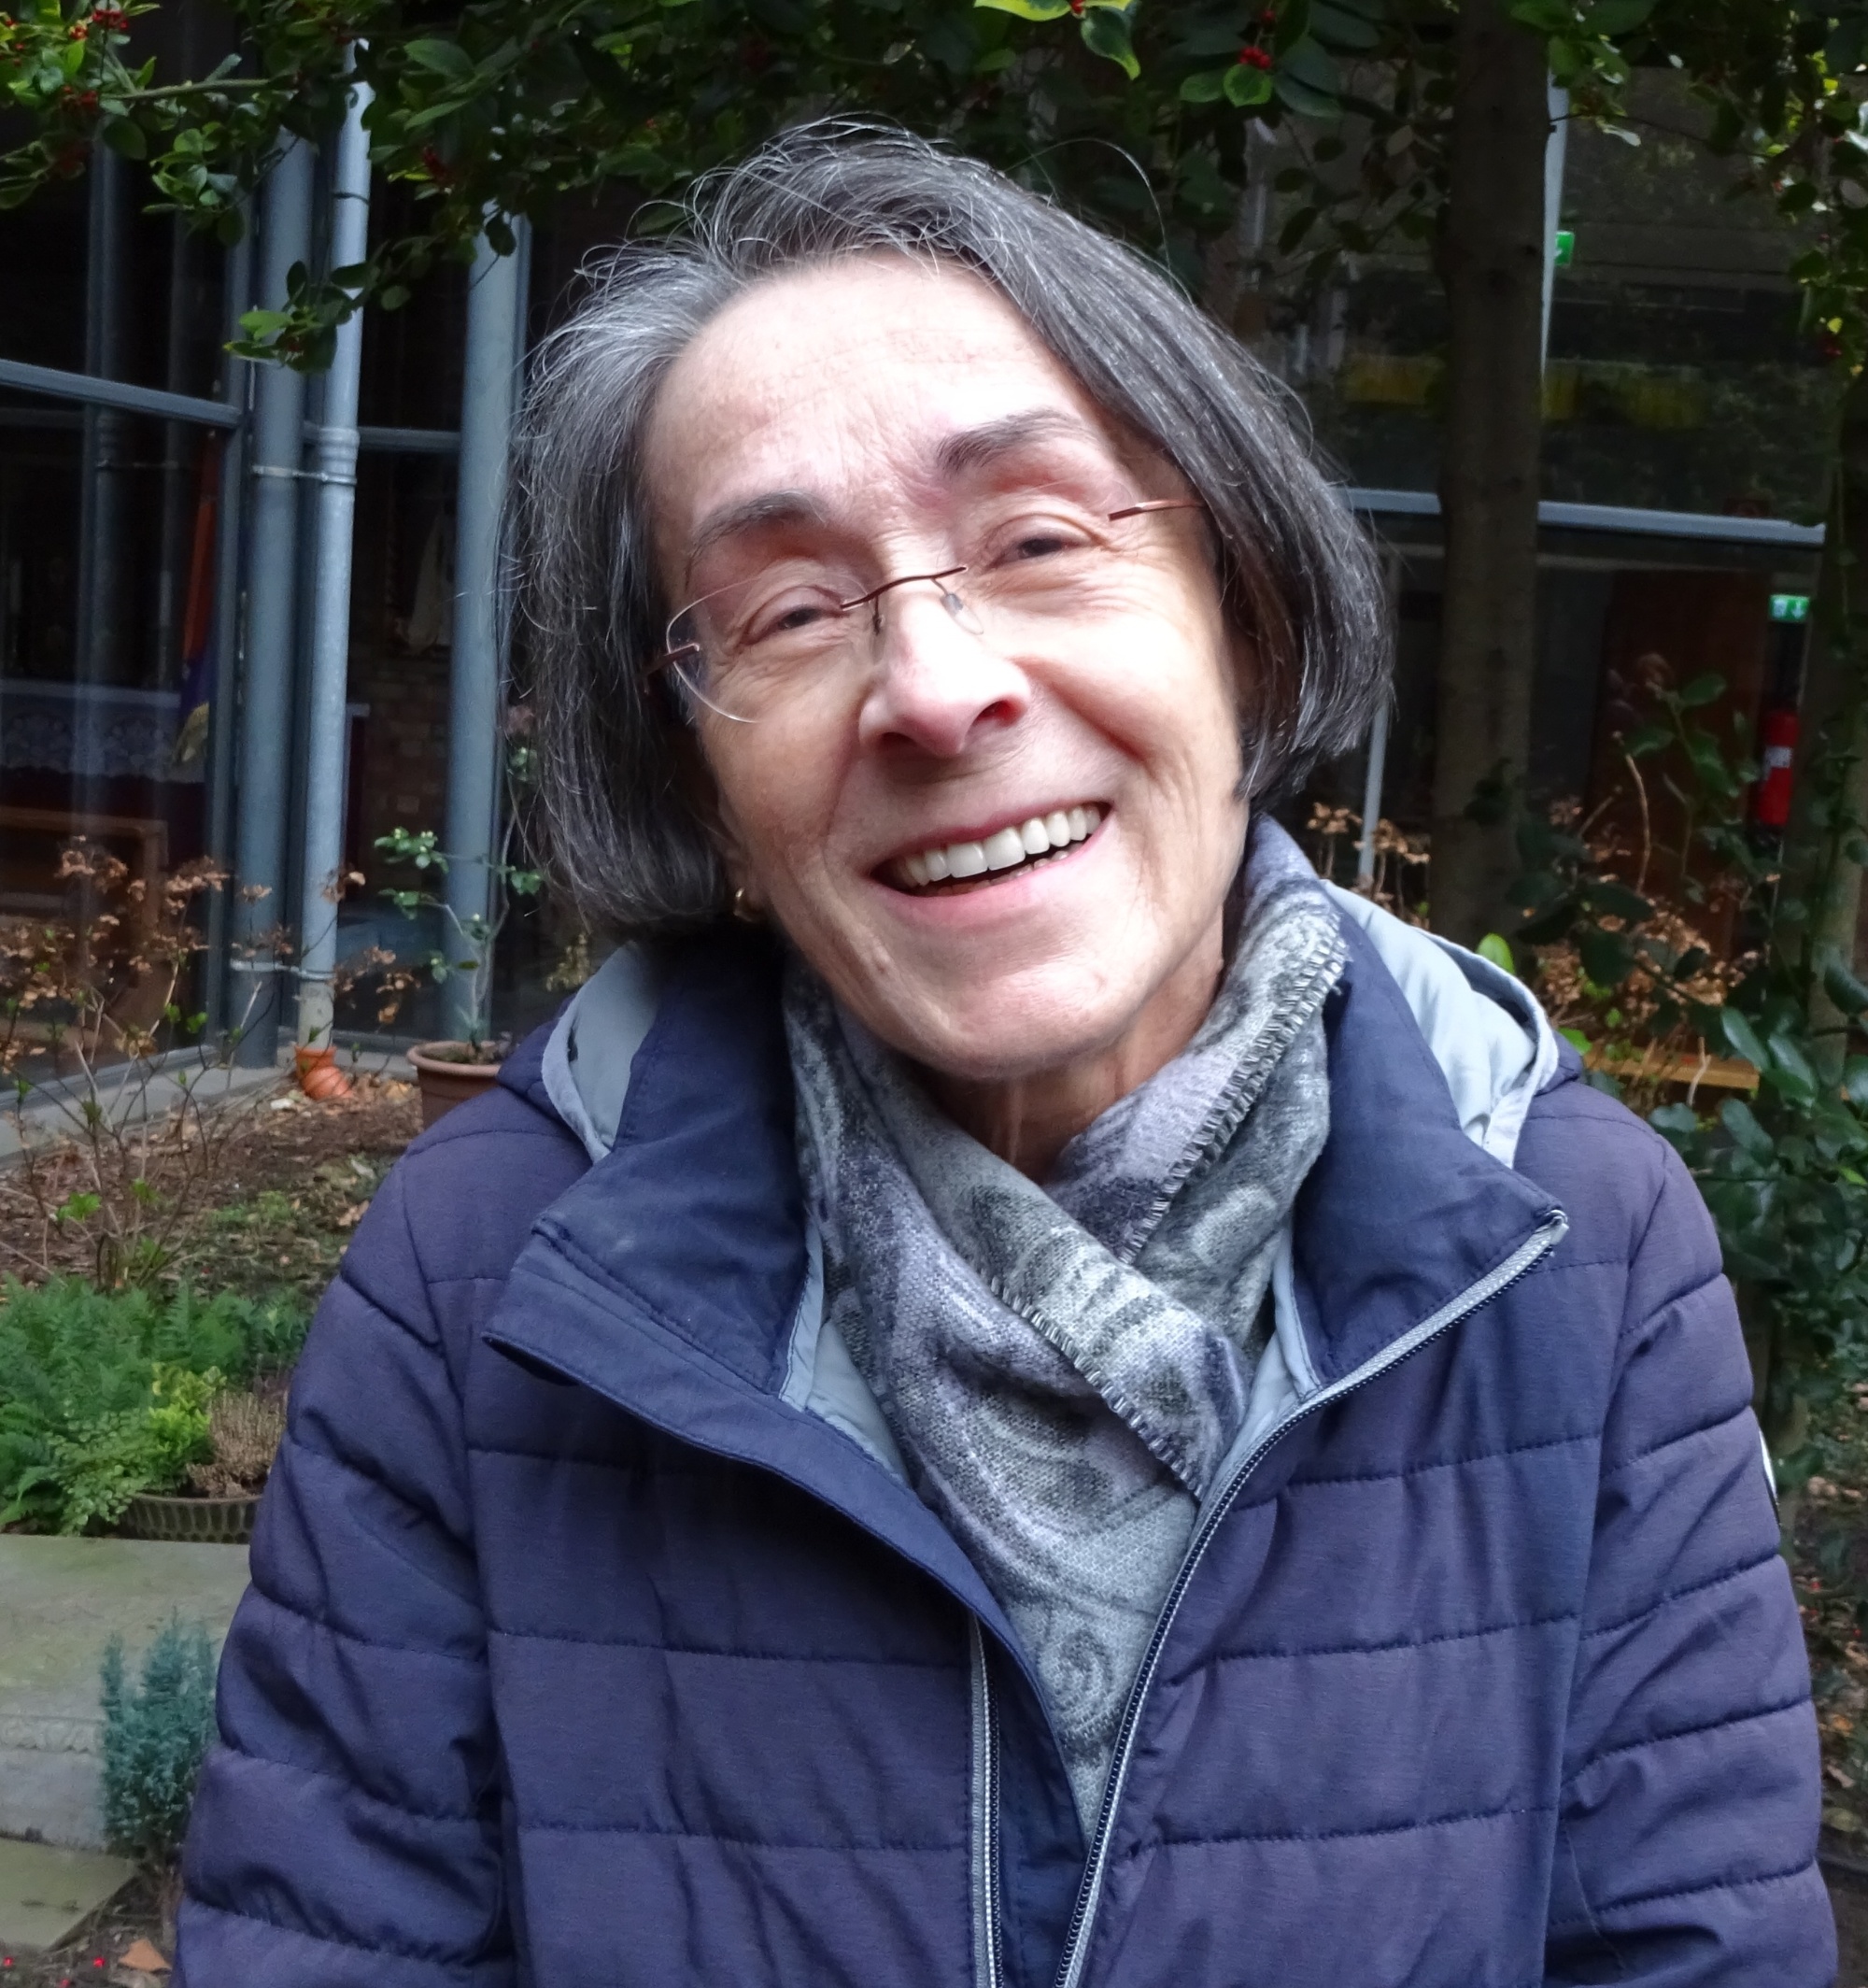 Christine Schürgers, Ansprechpartnerin der Josefsbruderschaft